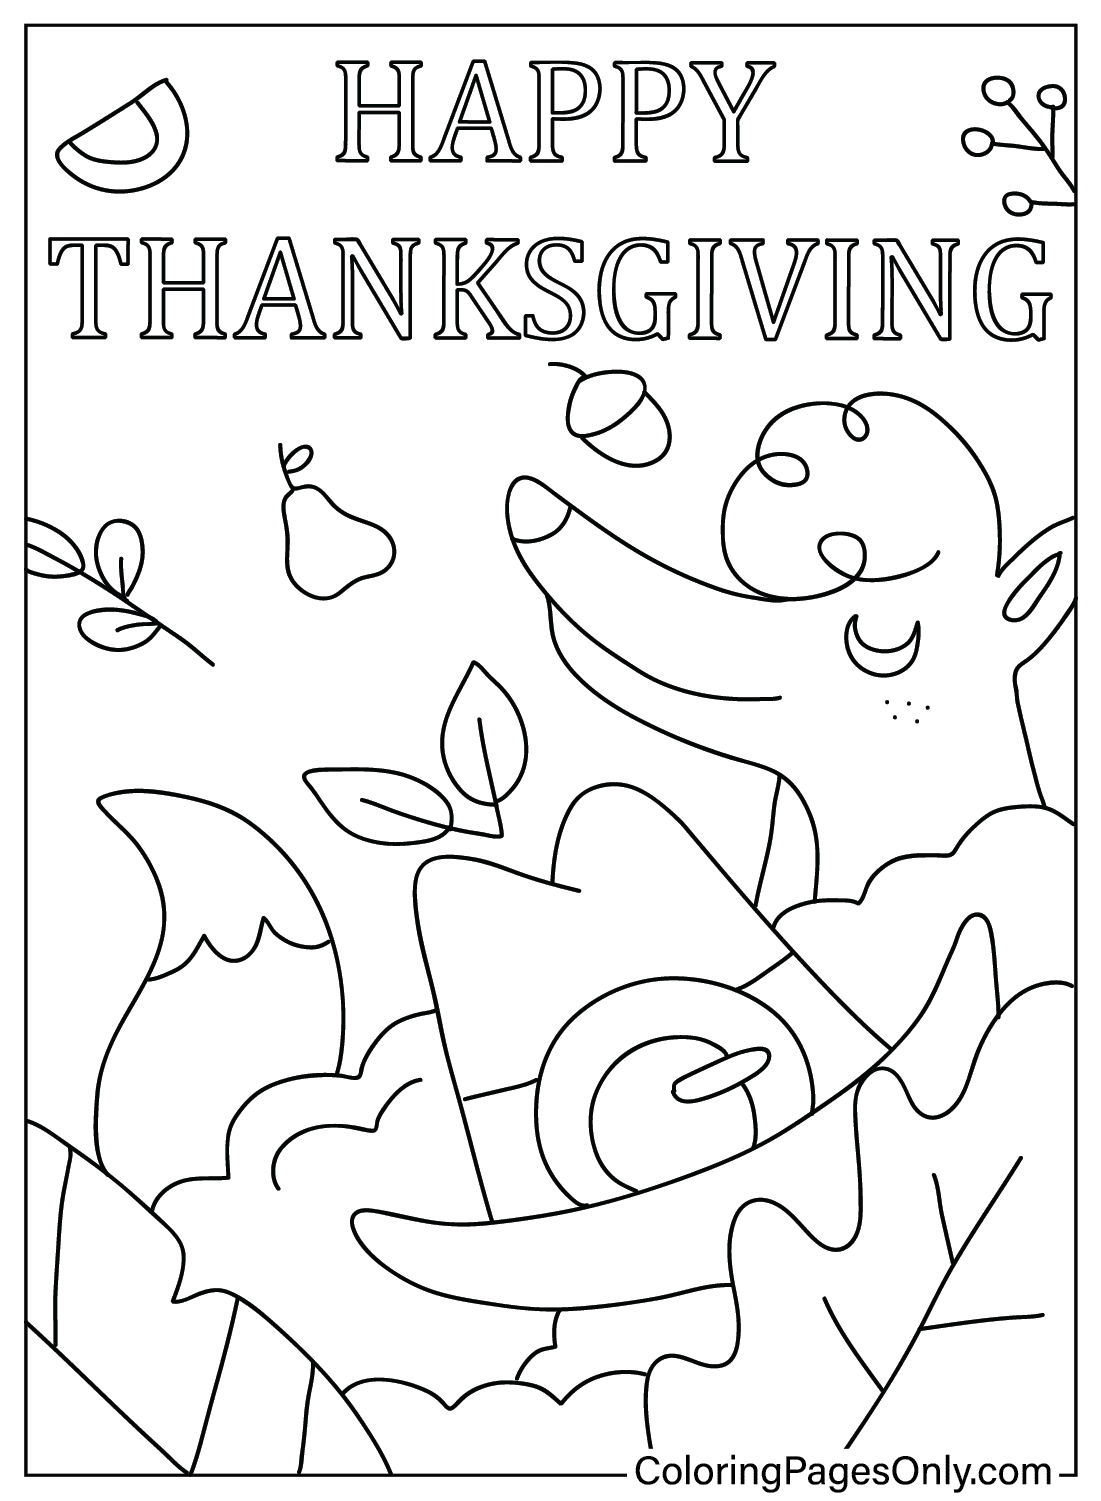 Malvorlagen für Erwachsene Thanksgiving